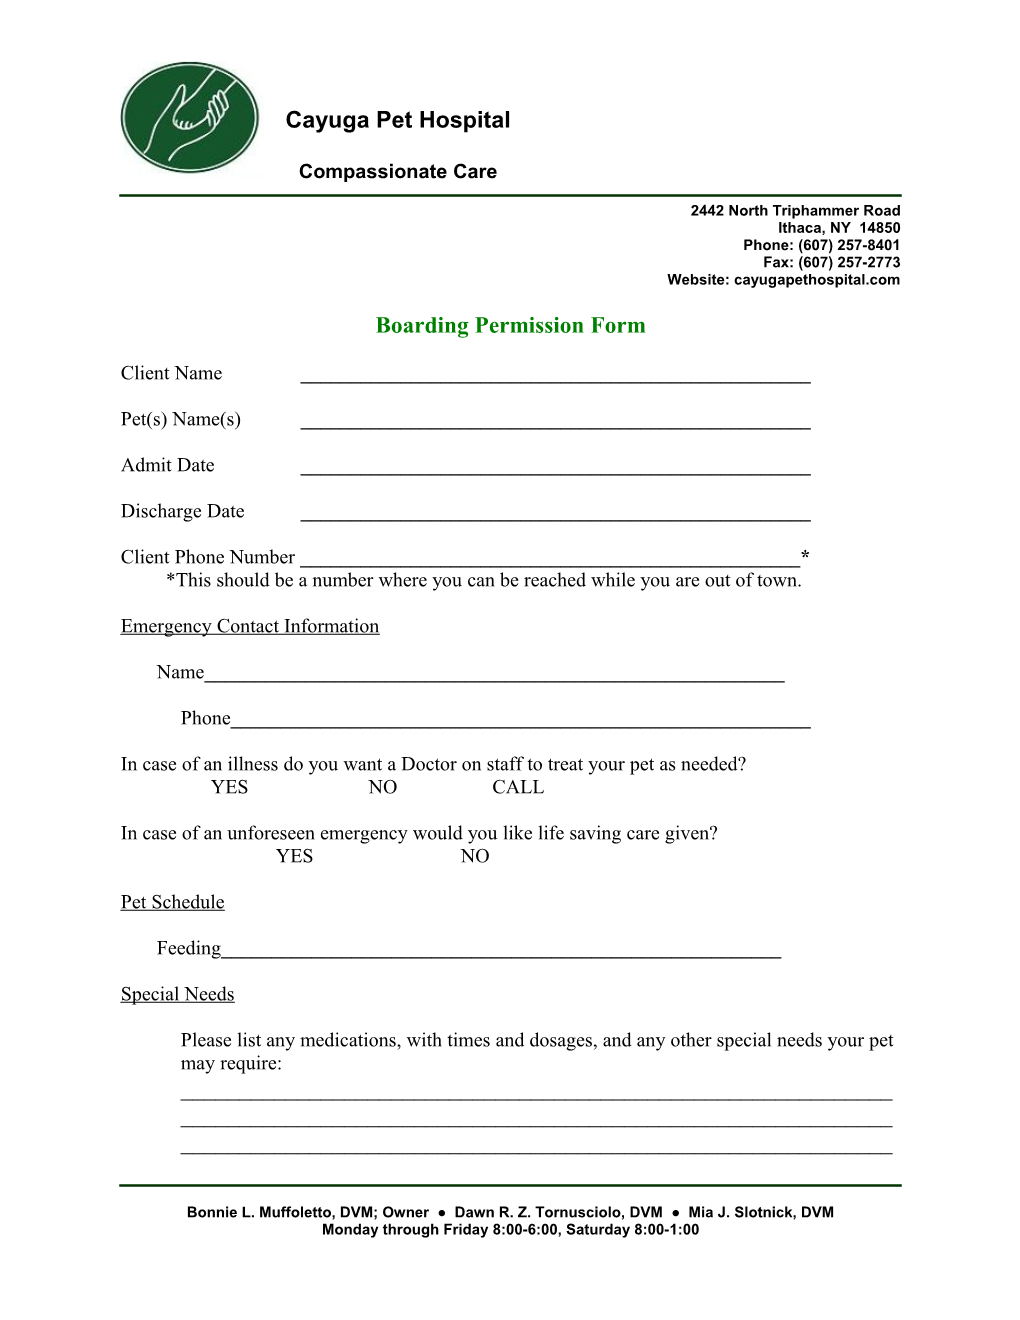 Boarding Permission Form